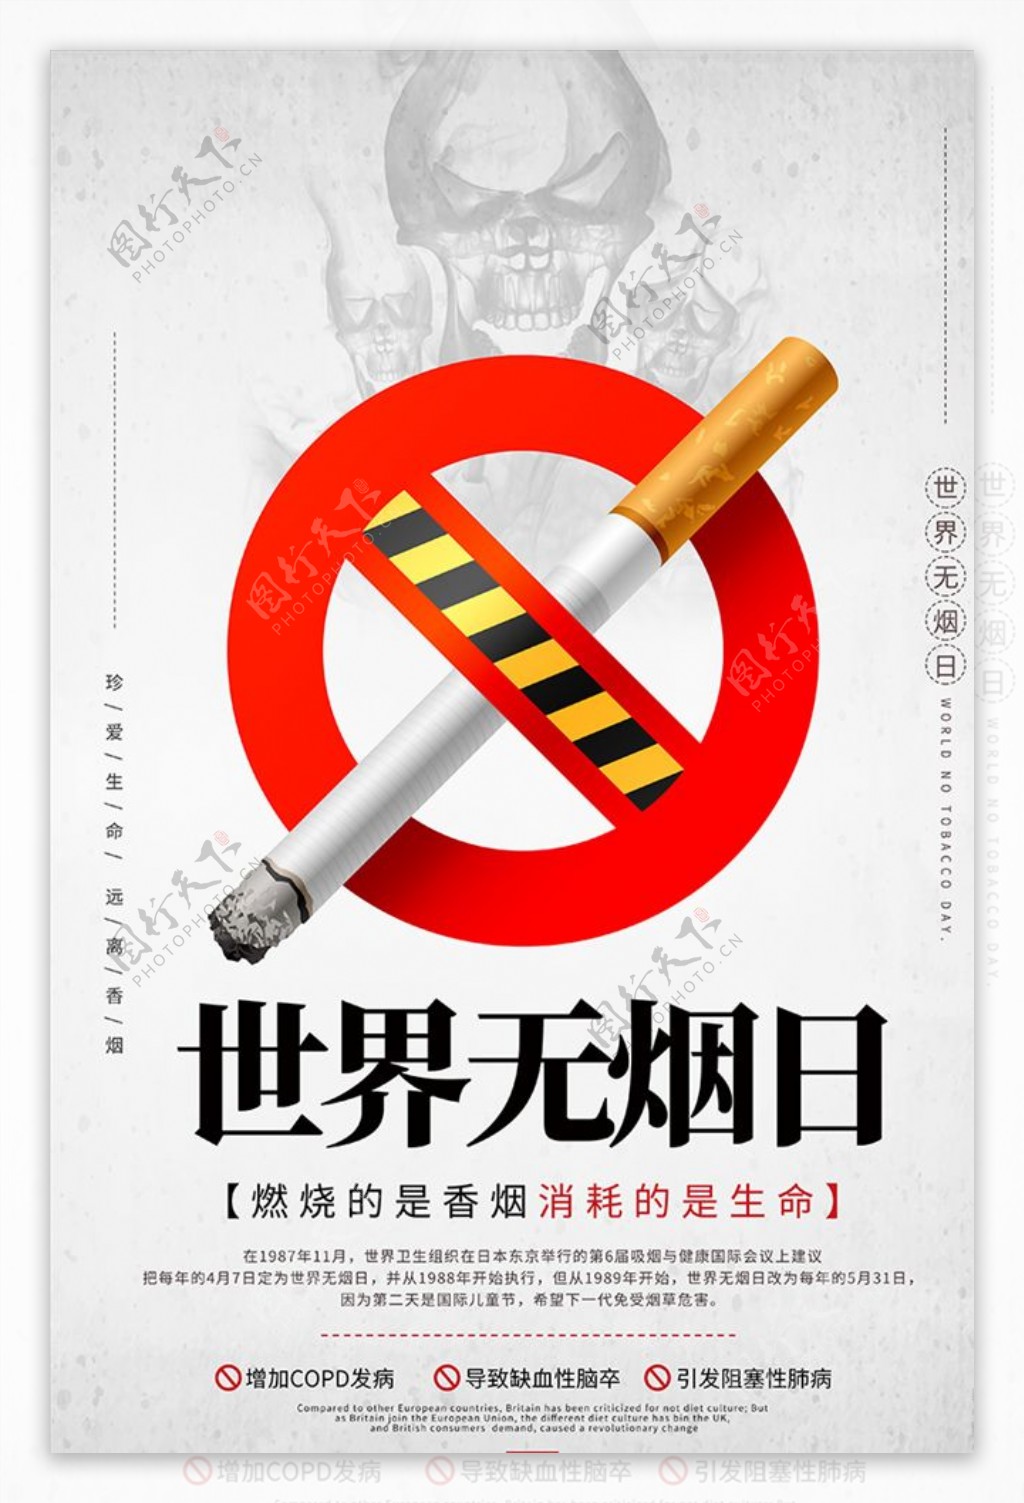 灰色世界无烟日香烟海报